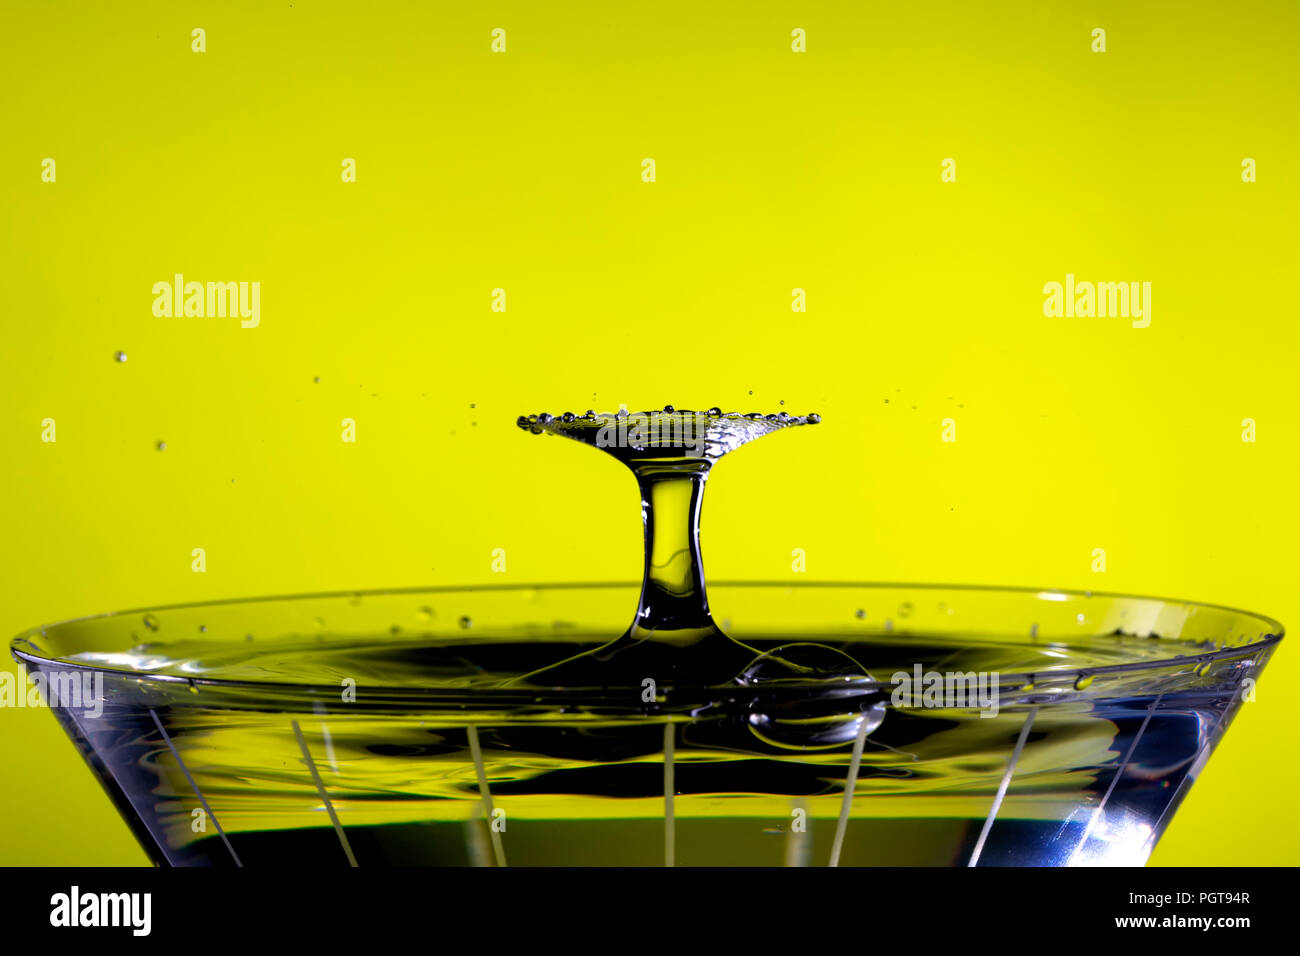 Tröpfchen kollidieren oben Martini Glas, wodurch ein radiallüfter Muster. Hintergrund ist gelb/ Stockfoto